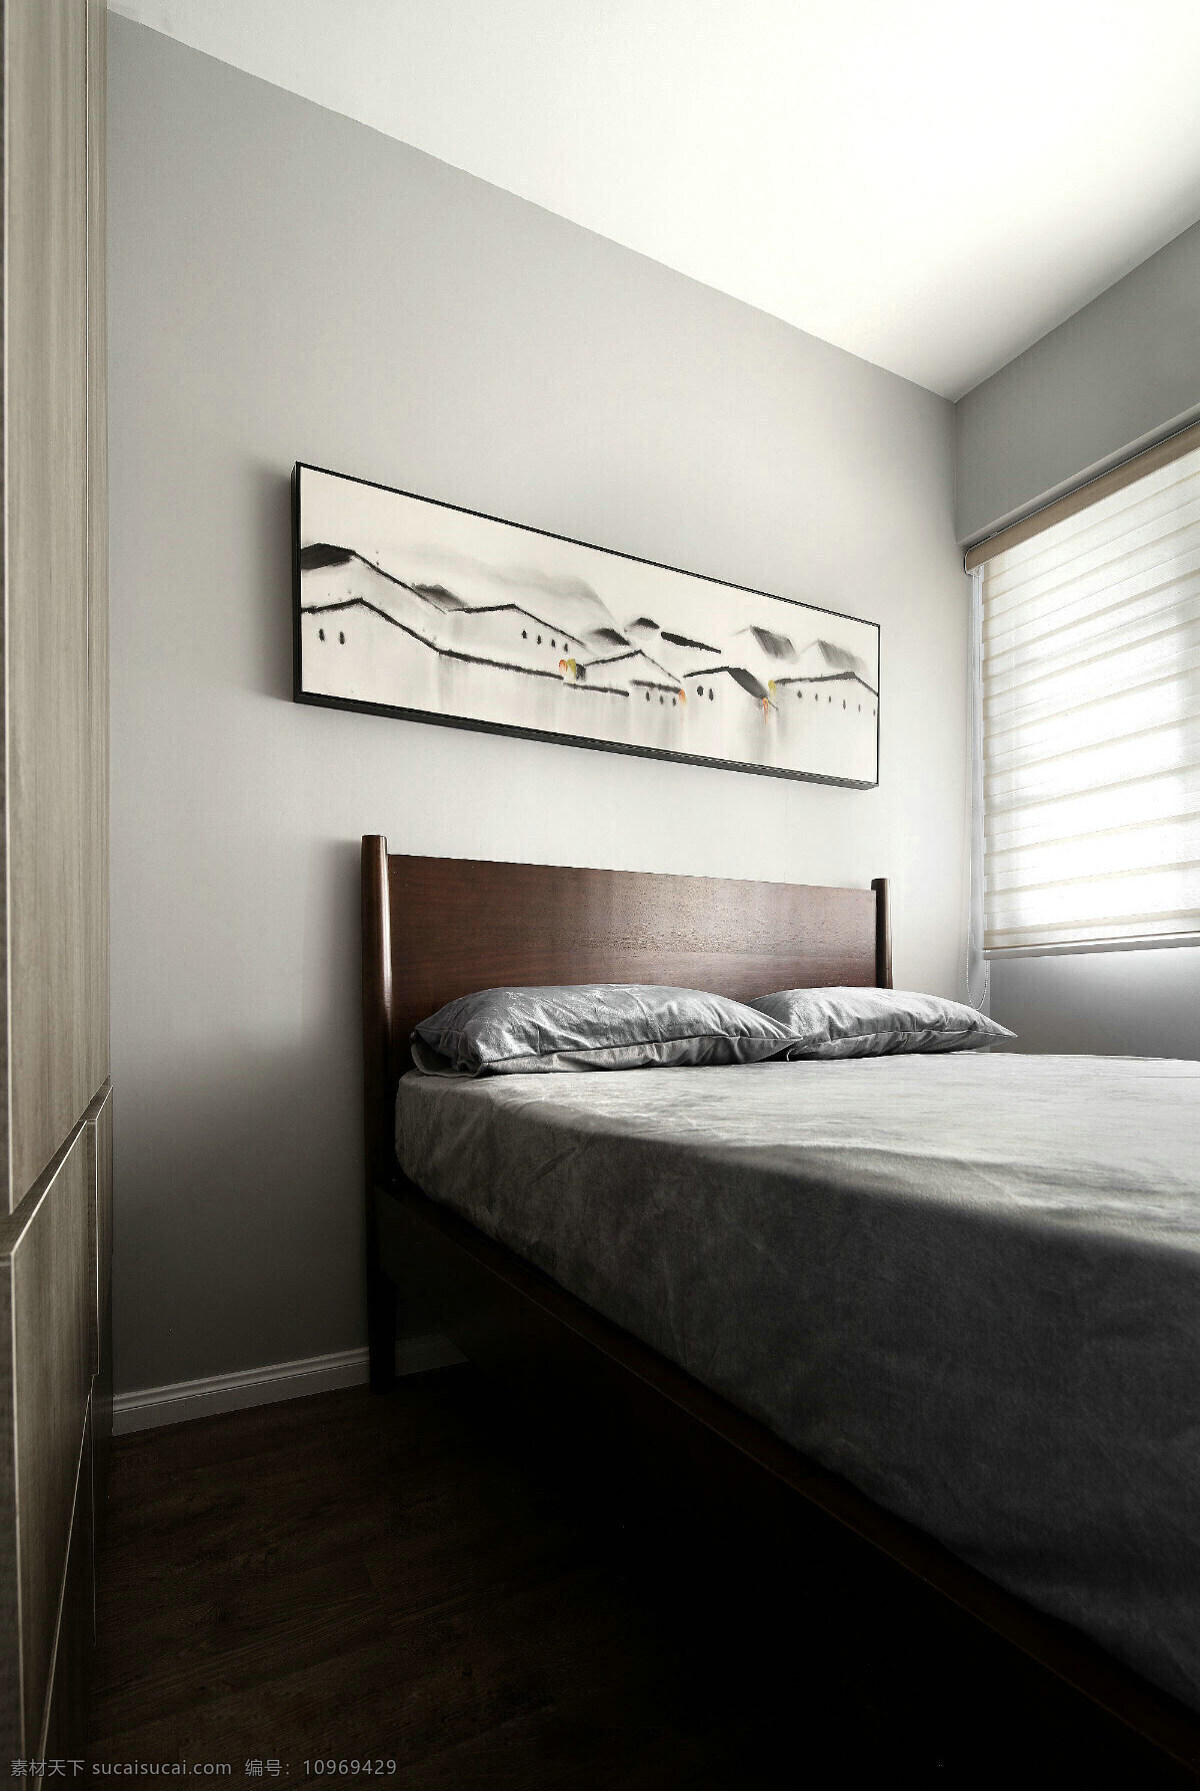 简约 卧室 壁画 装修 效果图 窗户 床铺 灰色床头背景 灰色窗帘